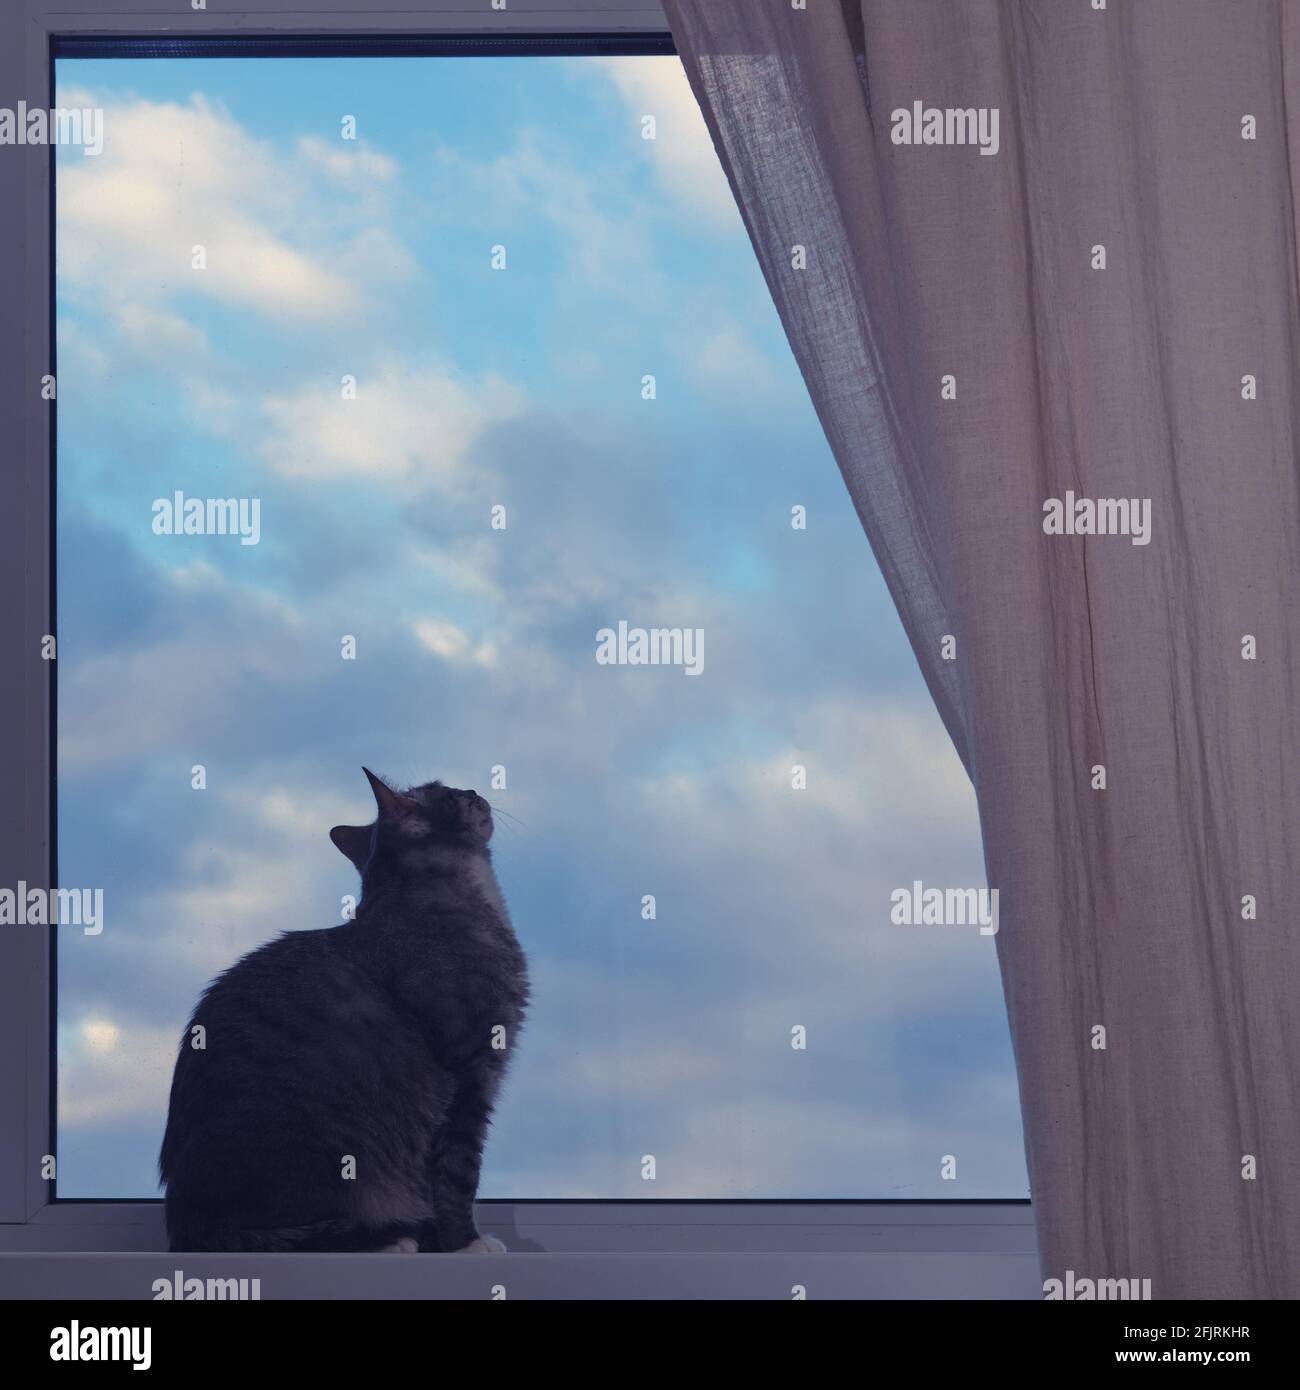 Die Katze sitzt am Fenster, die Wolken fliegen Am blauen Himmel  Stockfotografie - Alamy